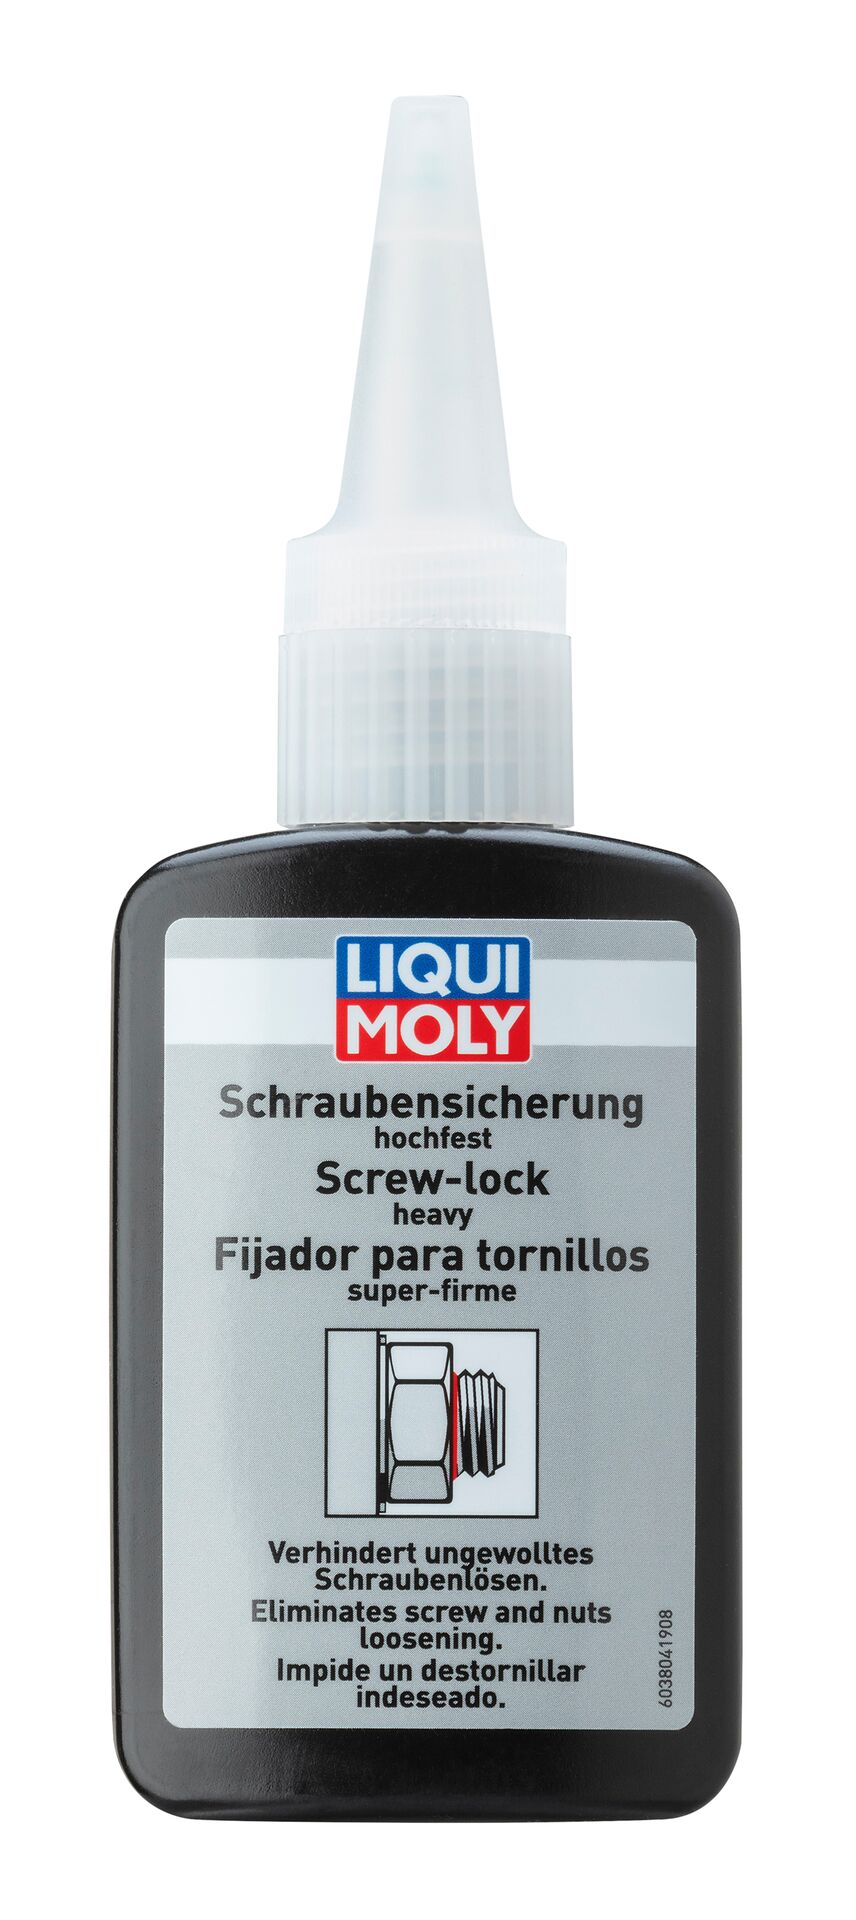 Liqui Moly Schrauben Sicherung hochfest Kleber Sicherunglack 50 g